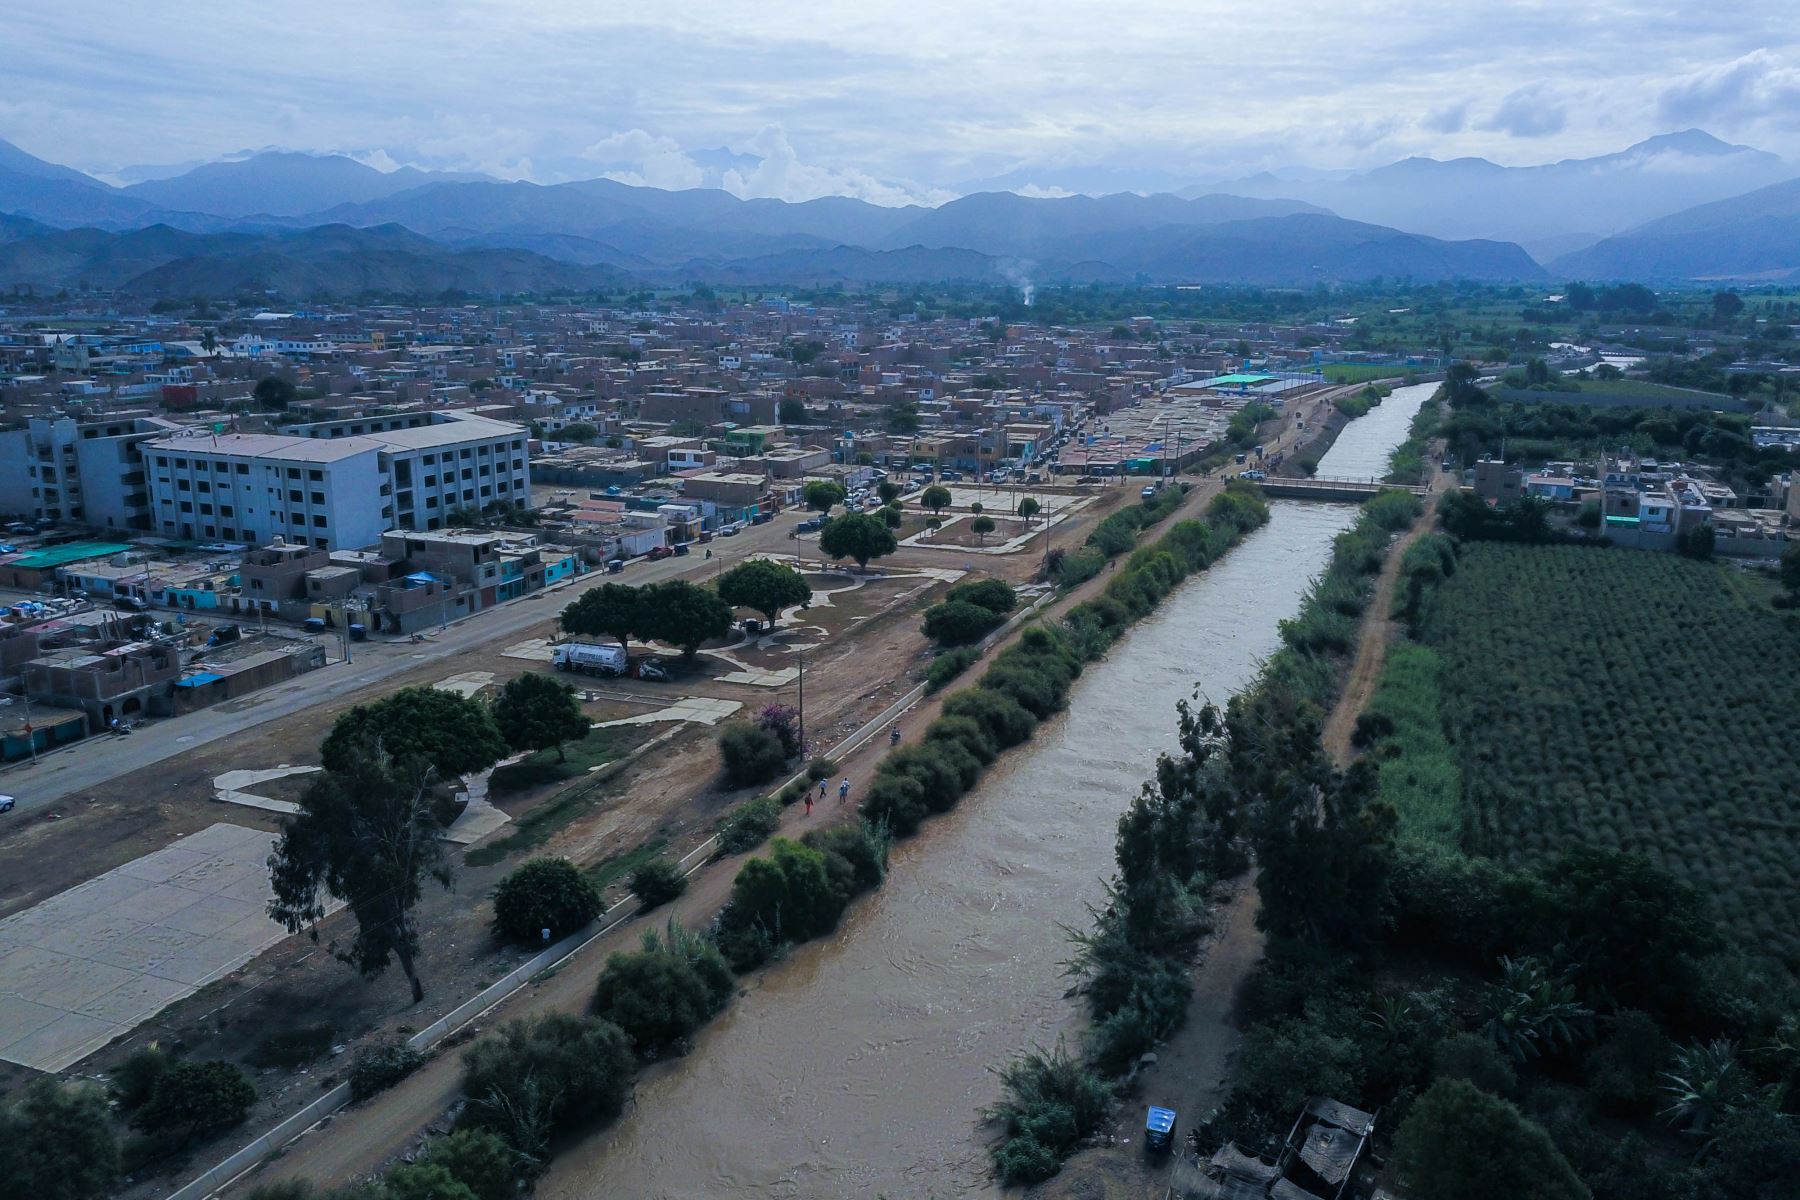 La ciudad de Huarmey, en Áncash, está en alerta debido al incremento del caudal del río del mismo nombre que ya alcanzó su máximo nivel y se teme un posible desborde. Foto: ANDINA/Daniel Bracamonte.